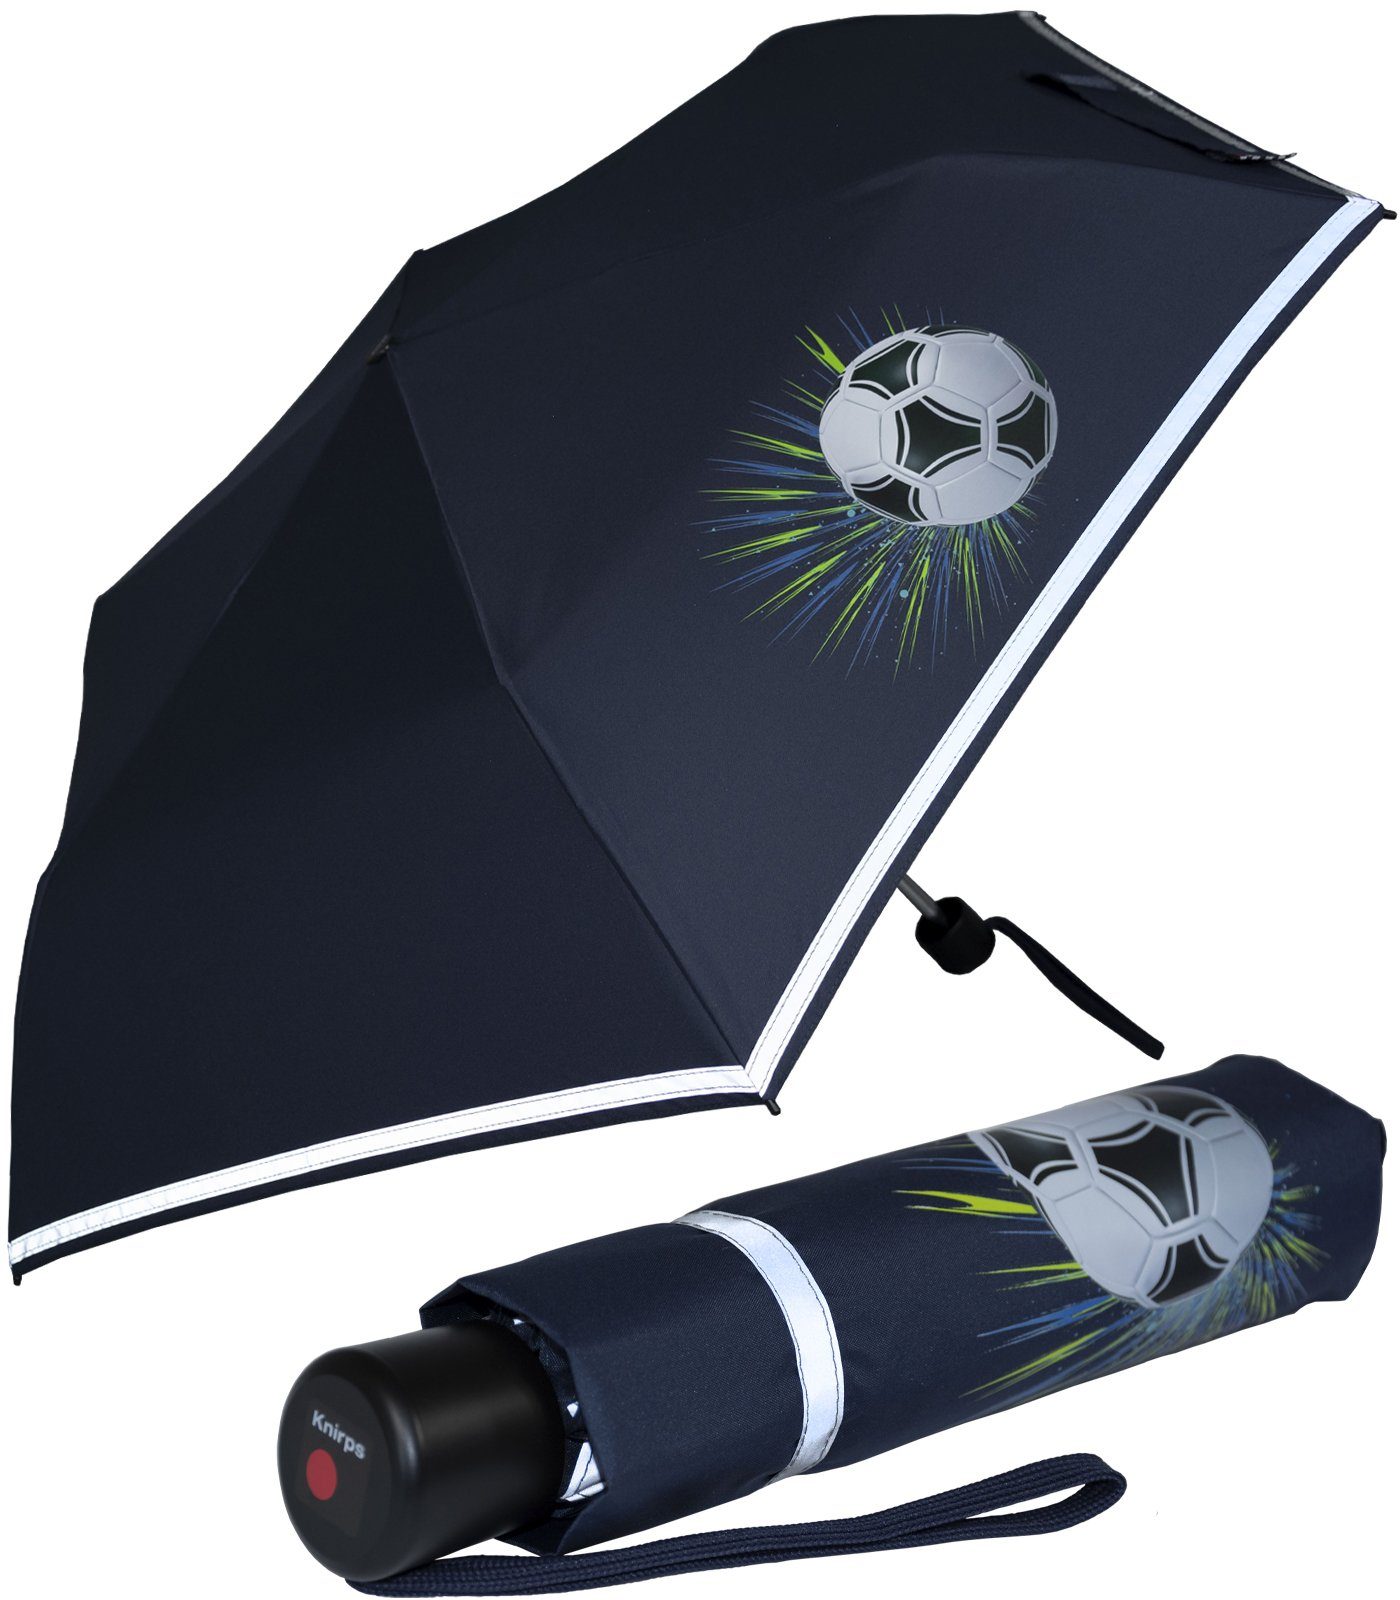 Taschenregenschirm auf white Fussball, mit 4Kids Goal Schulweg, Sicherheit Reflexborte, Knirps® Kinderschirm reflective dem